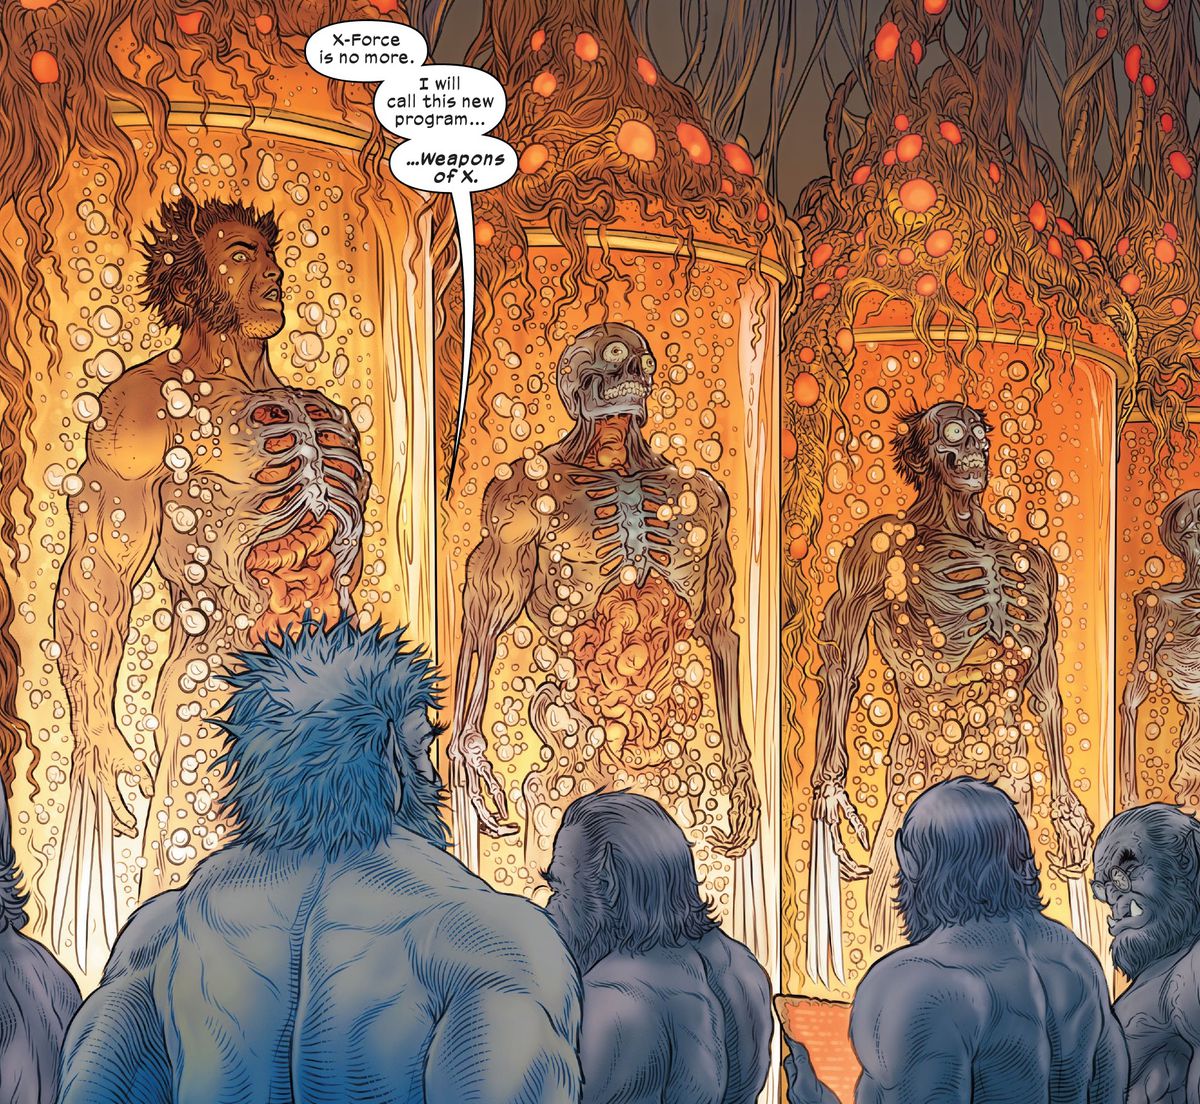 Beast, büyüyen Wolverine klonlarının birkaç fıçısını denetleyen diğer dört Beast klonuna "X-Force artık yok" diyor. Wolverine #31 (2023)'te "Bu yeni programa... Weapons of X" adını vereceğim.